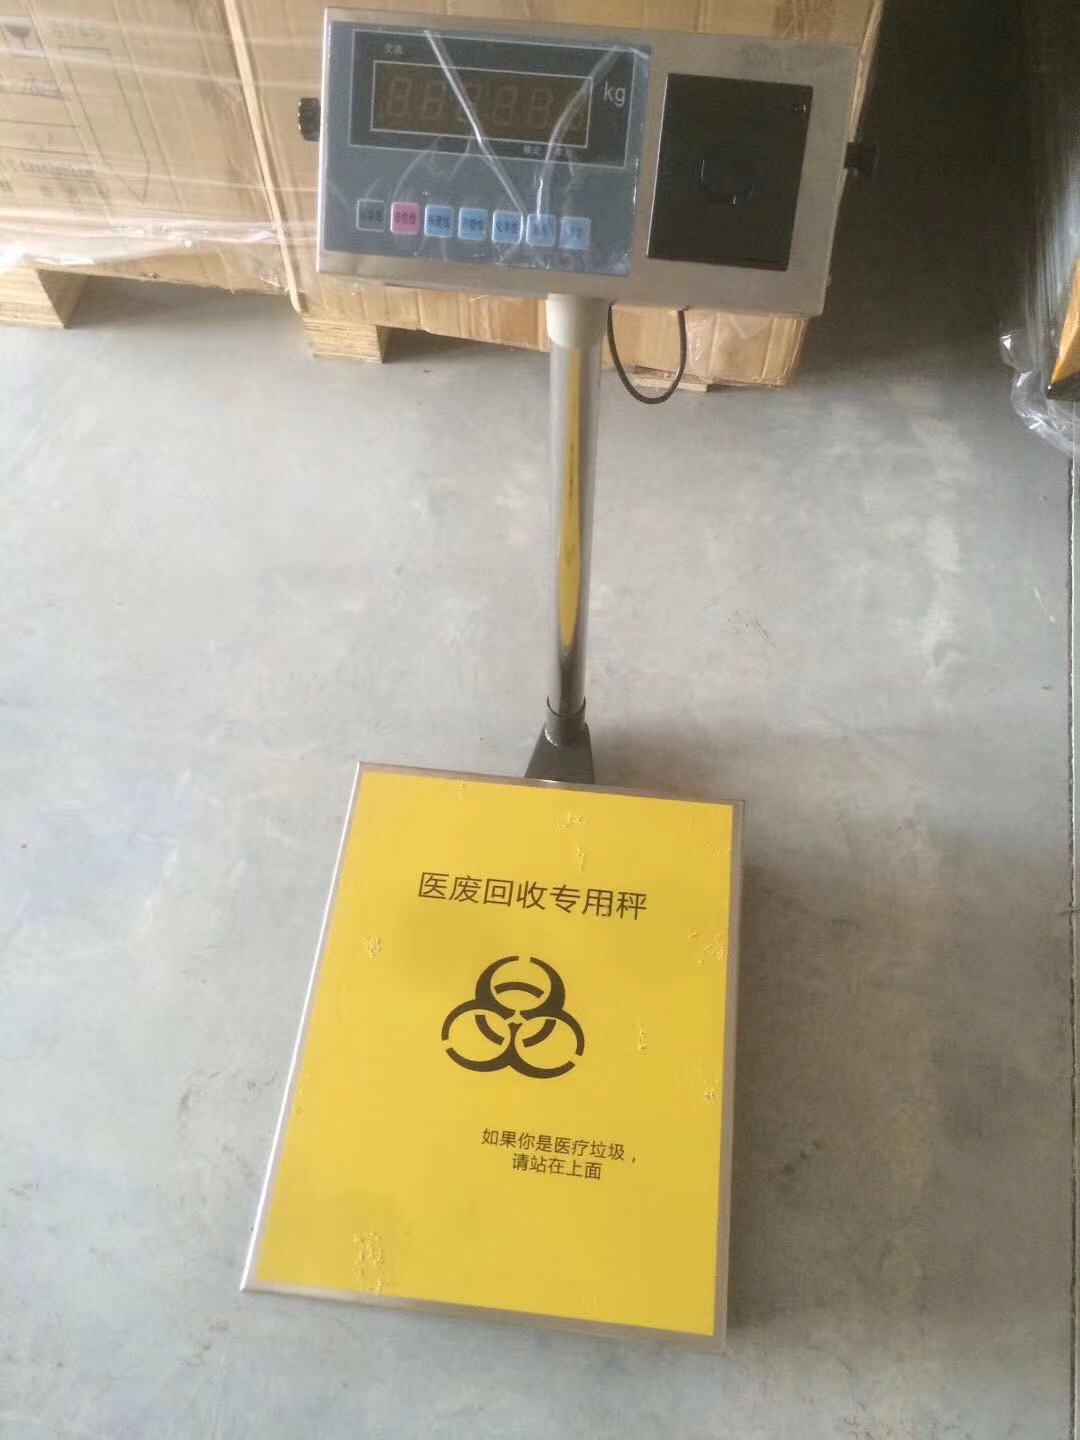 宁波100公斤餐厨垃圾车计数秤RFID技术称重系统